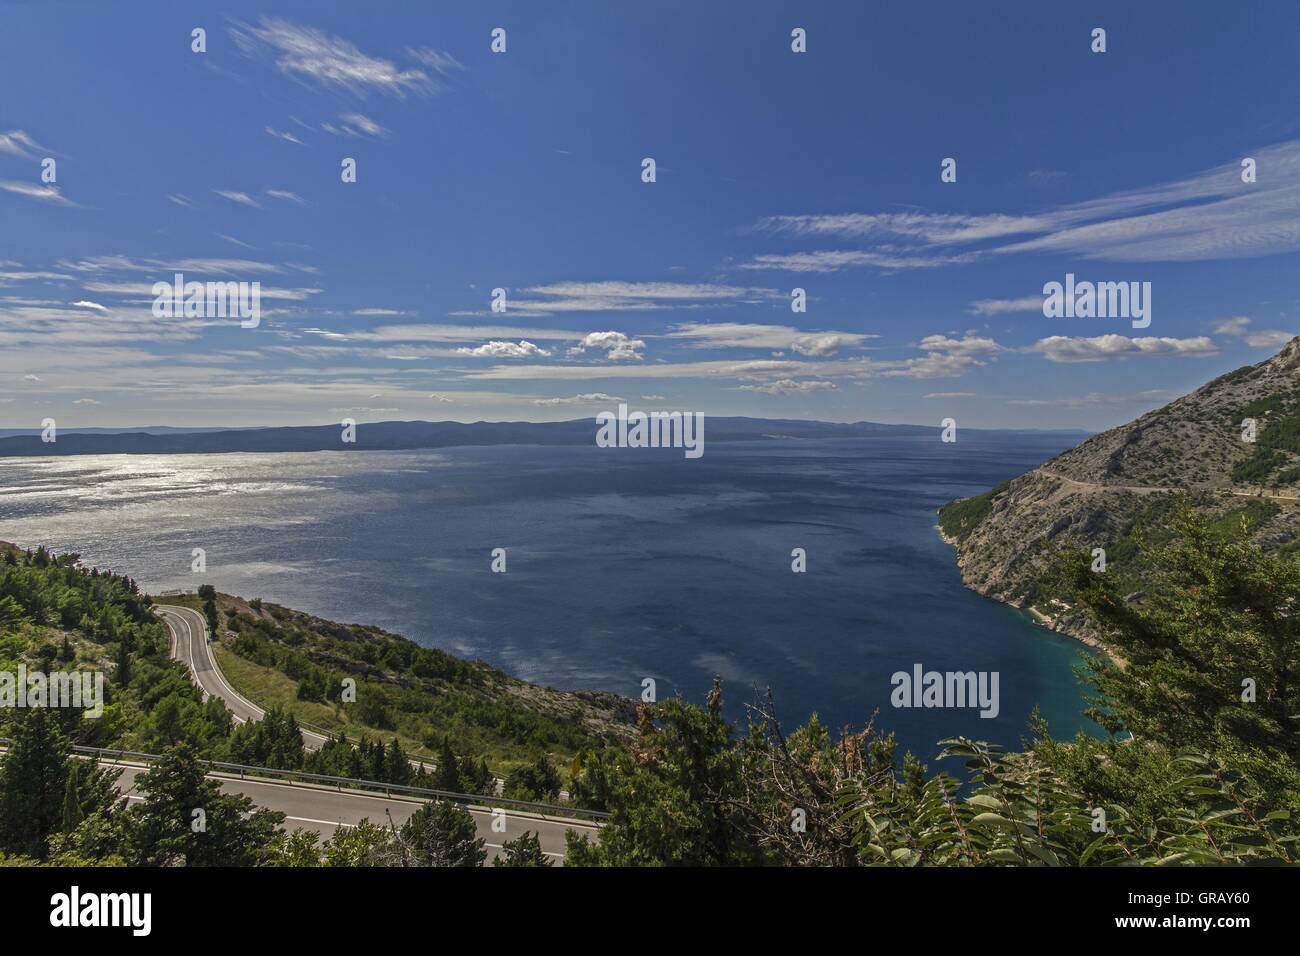 Début de la Riviera de Makarska à la baie Vrulja avec les îles de Brac et Hvar en arrière-plan Banque D'Images